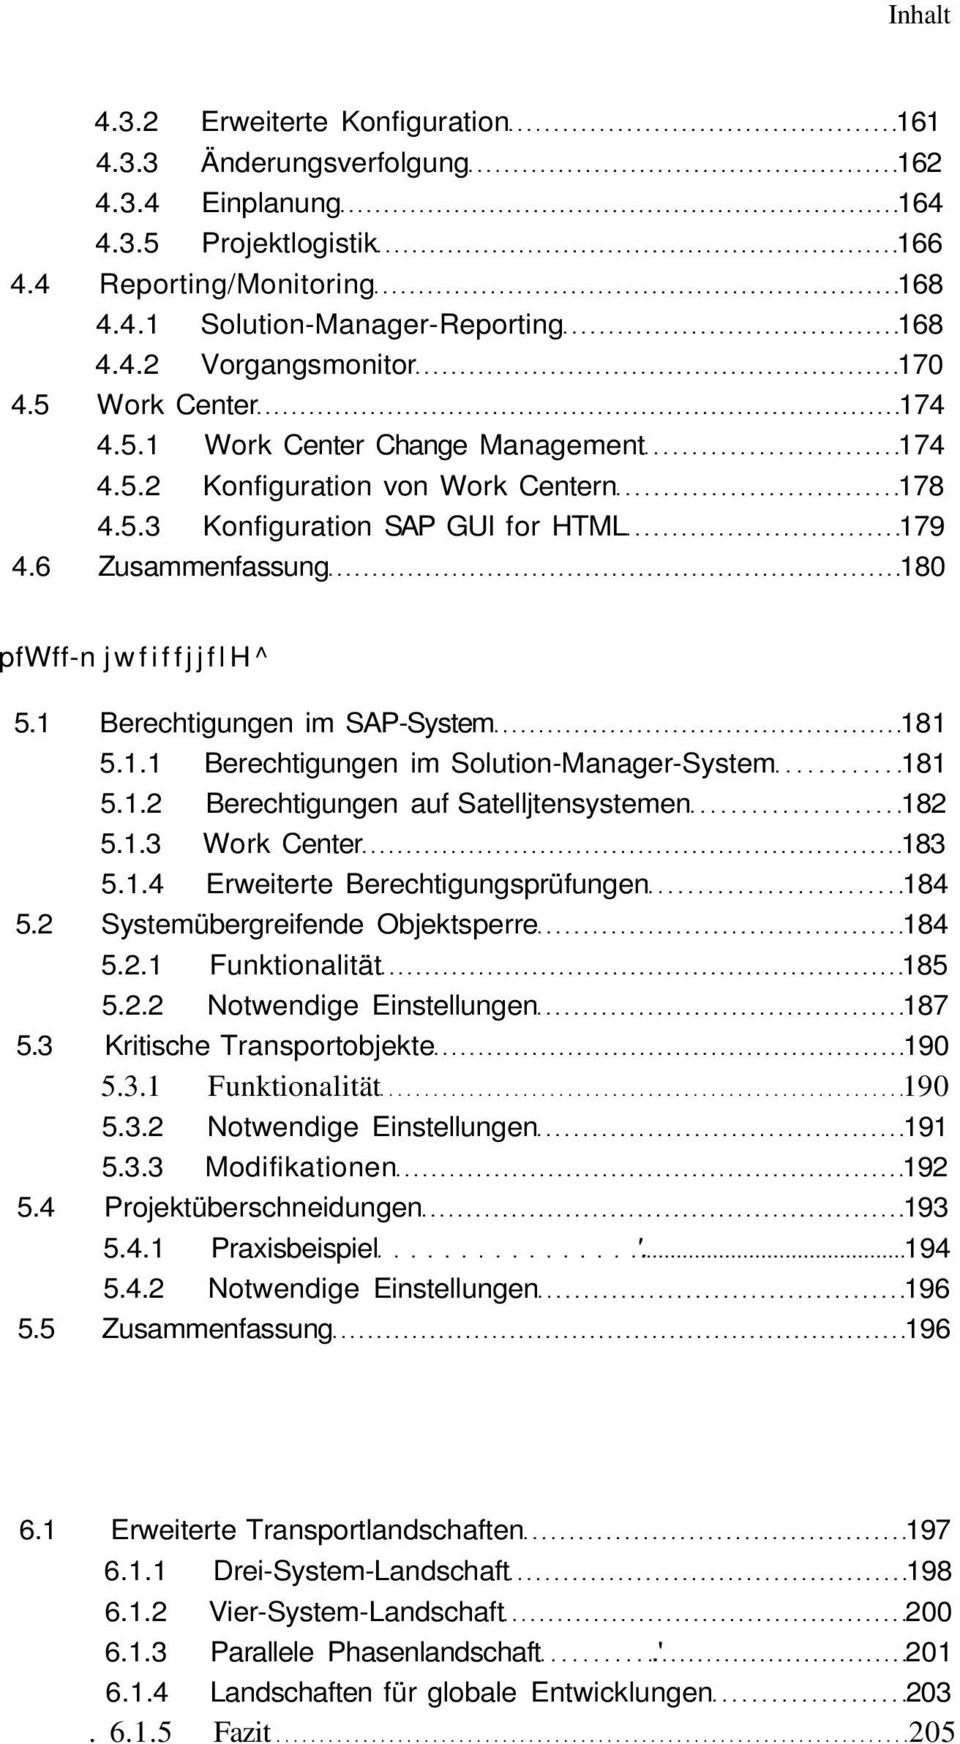 1 Berechtigungen im SAP-System 181 5.1.1 Berechtigungen im Solution-Manager-System 181 5.1.2 Berechtigungen auf Satelljtensystemen 182 5.1.3 Work Center 183 5.1.4 Erweiterte Berechtigungsprüfungen 184 5.